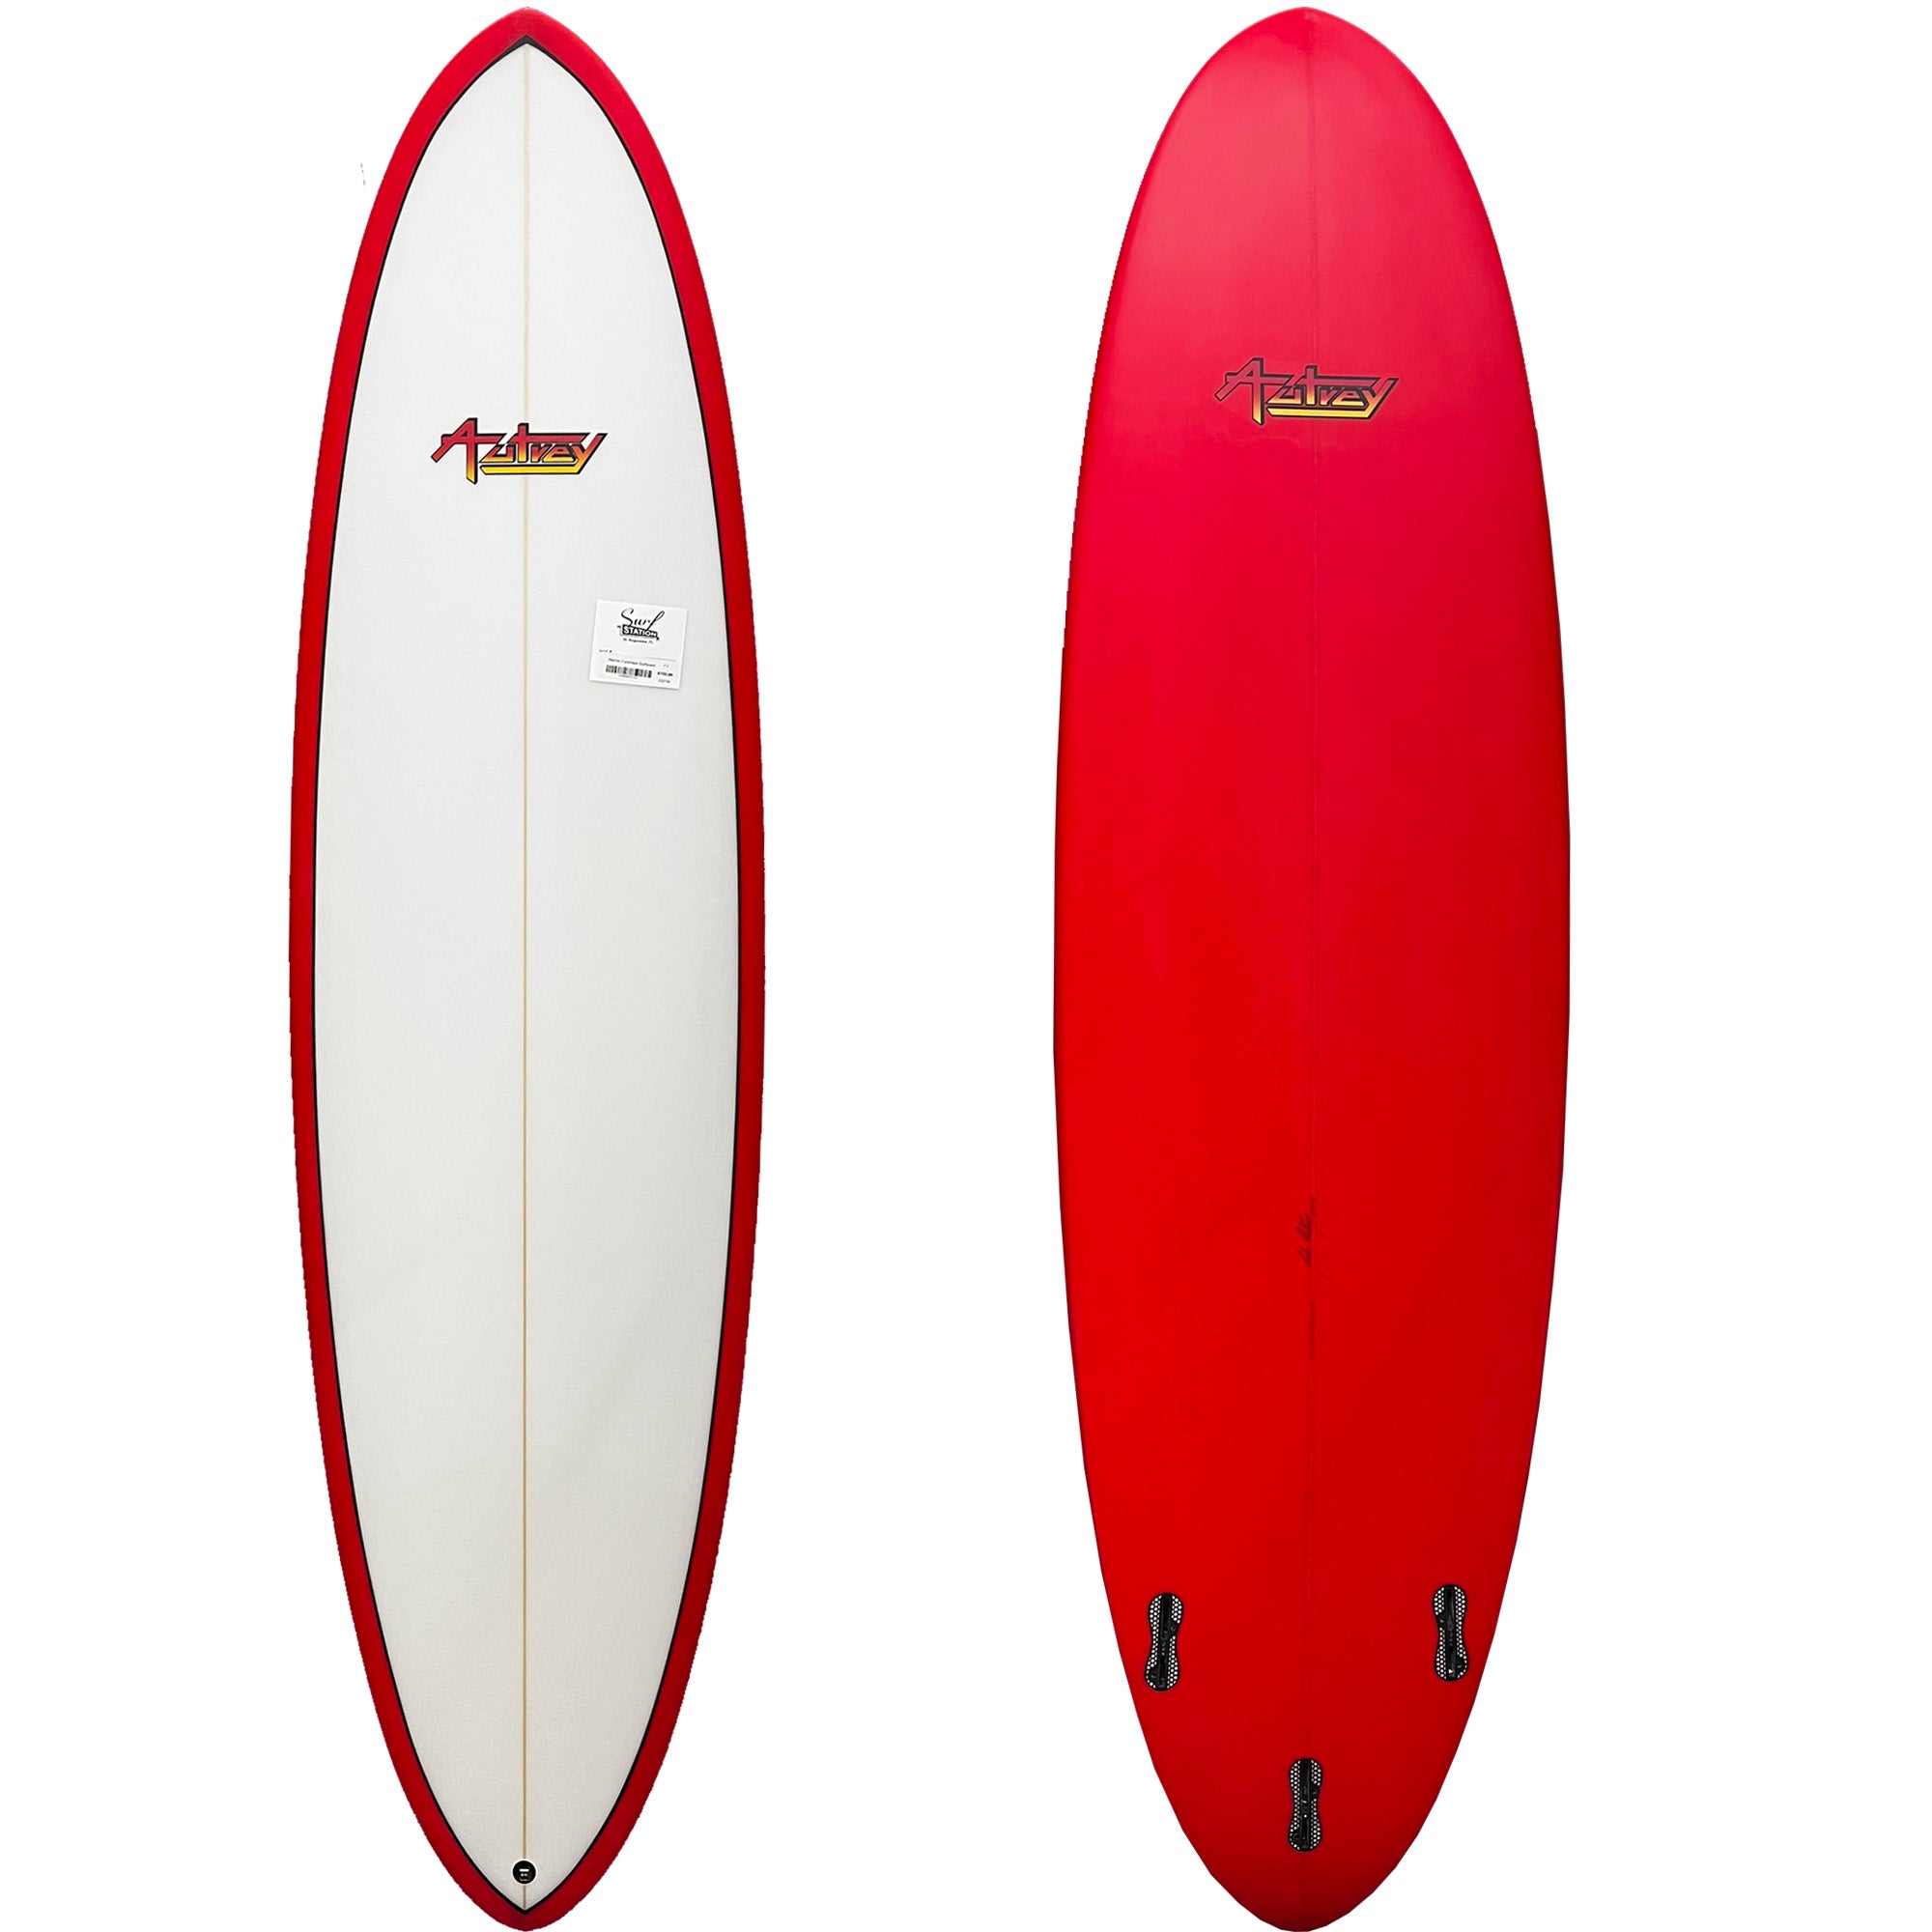 Warrior 7'0 Funshape Surfboard